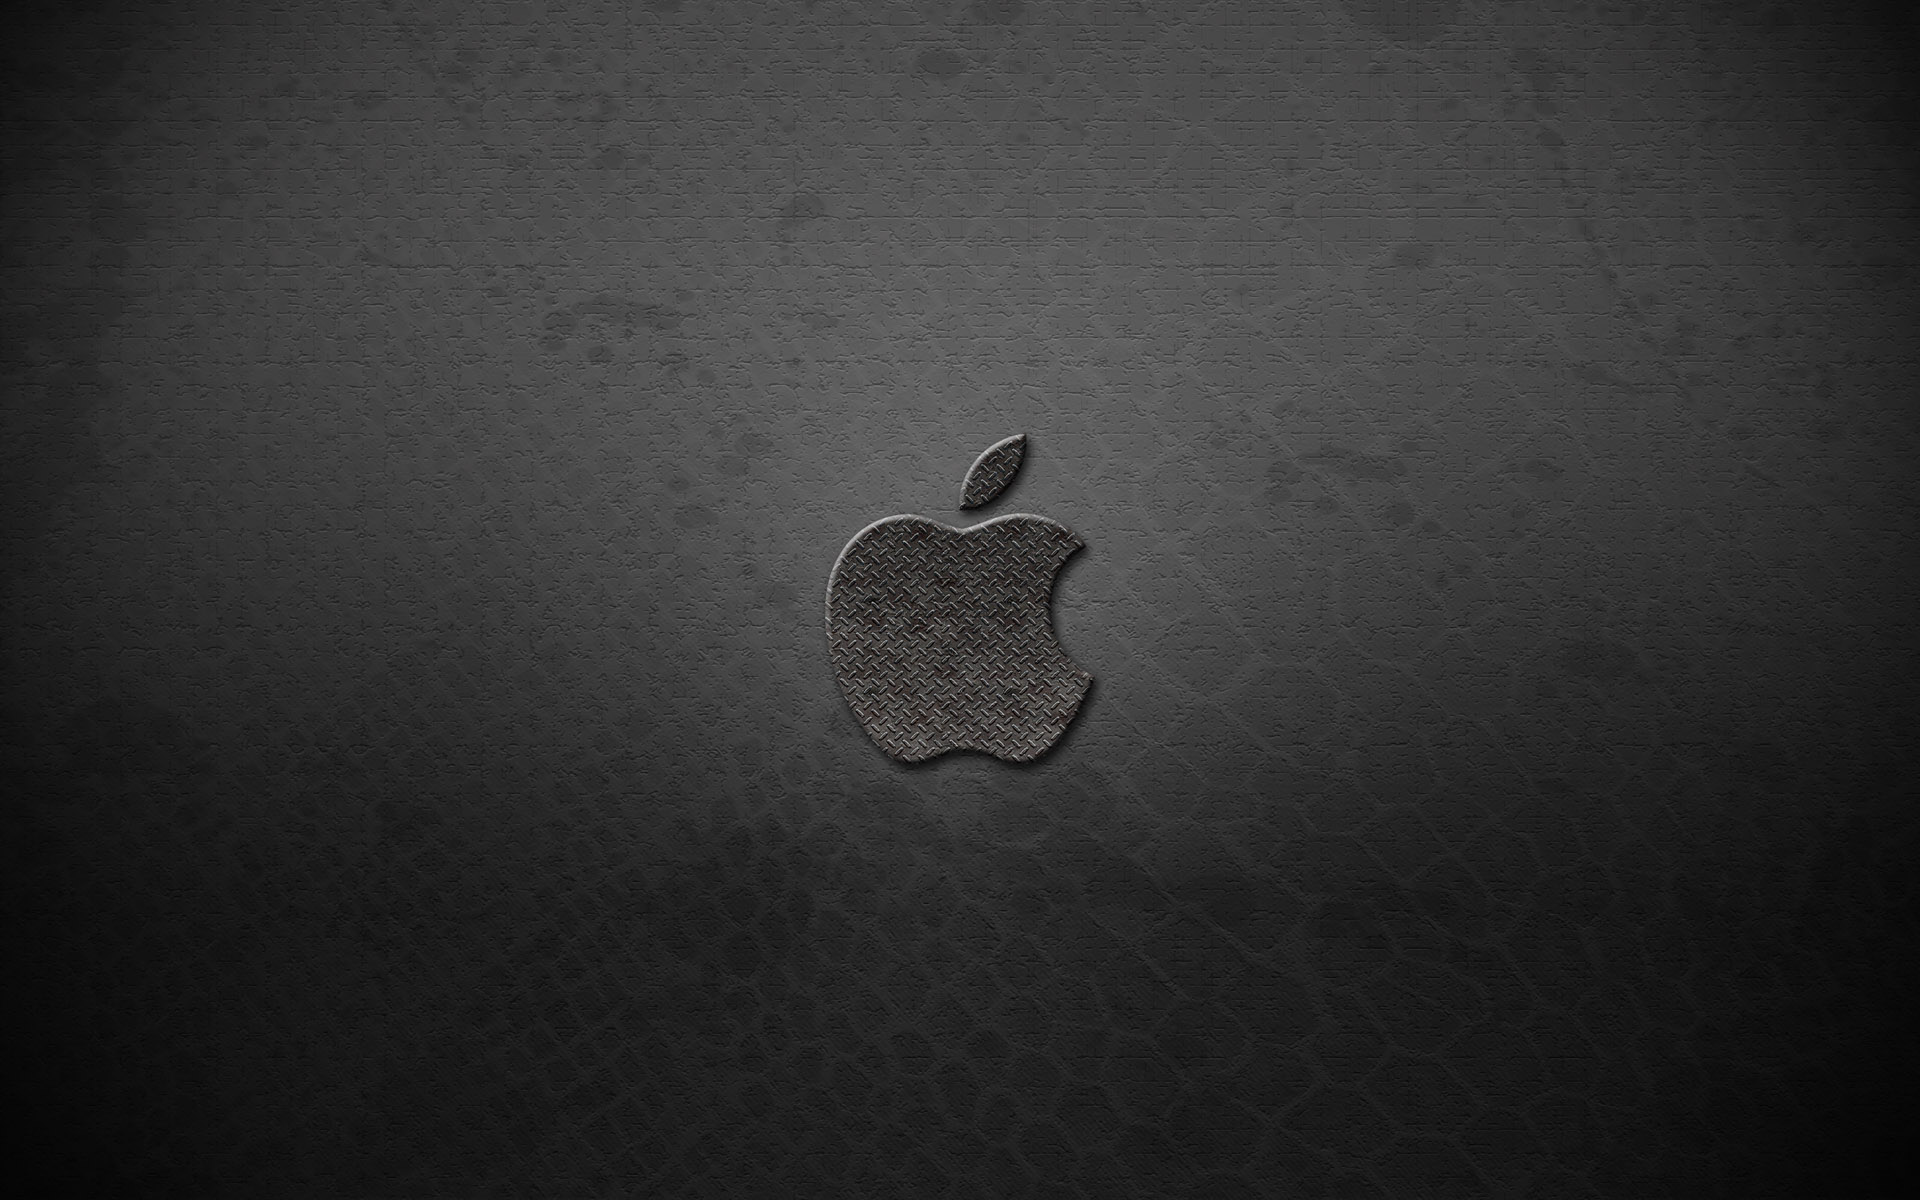 壁纸1920x1200Apple主题 52 19壁纸 Apple主题壁纸 Apple主题图片 Apple主题素材 系统壁纸 系统图库 系统图片素材桌面壁纸